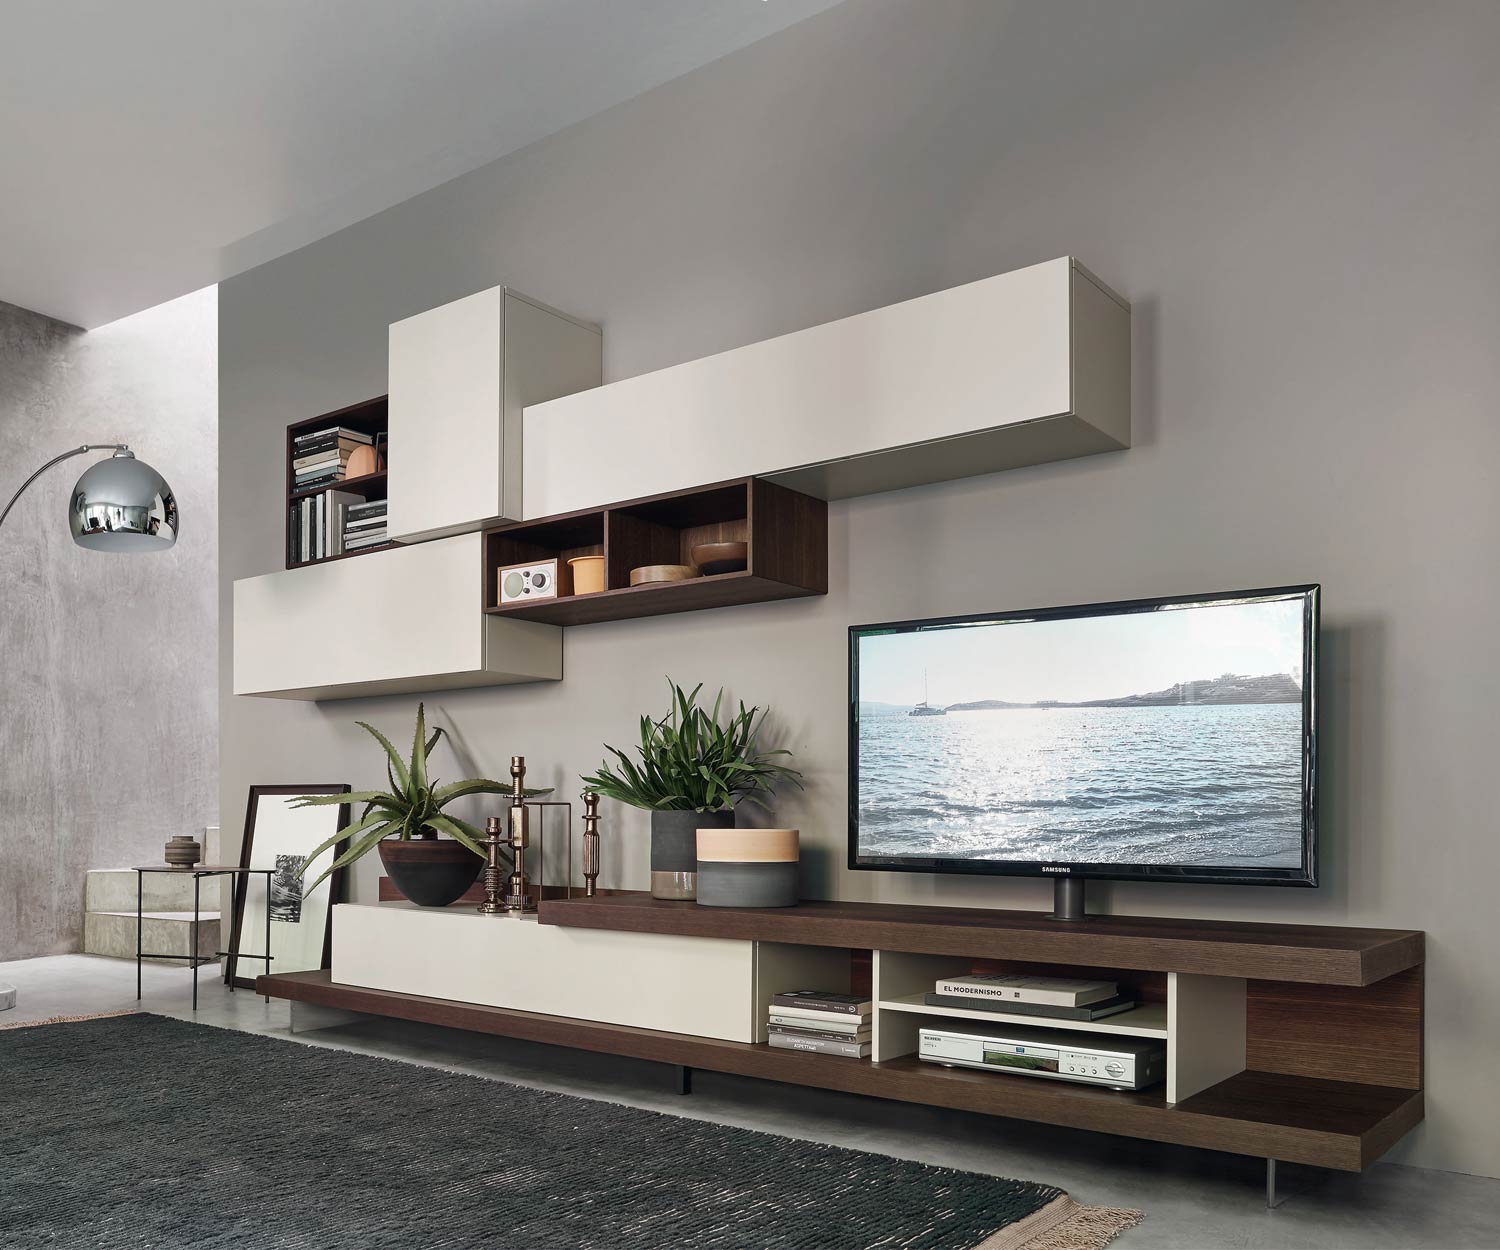 Exclusief Livitalia Design hangelement C52 met TV-design lowboard en hangelementen